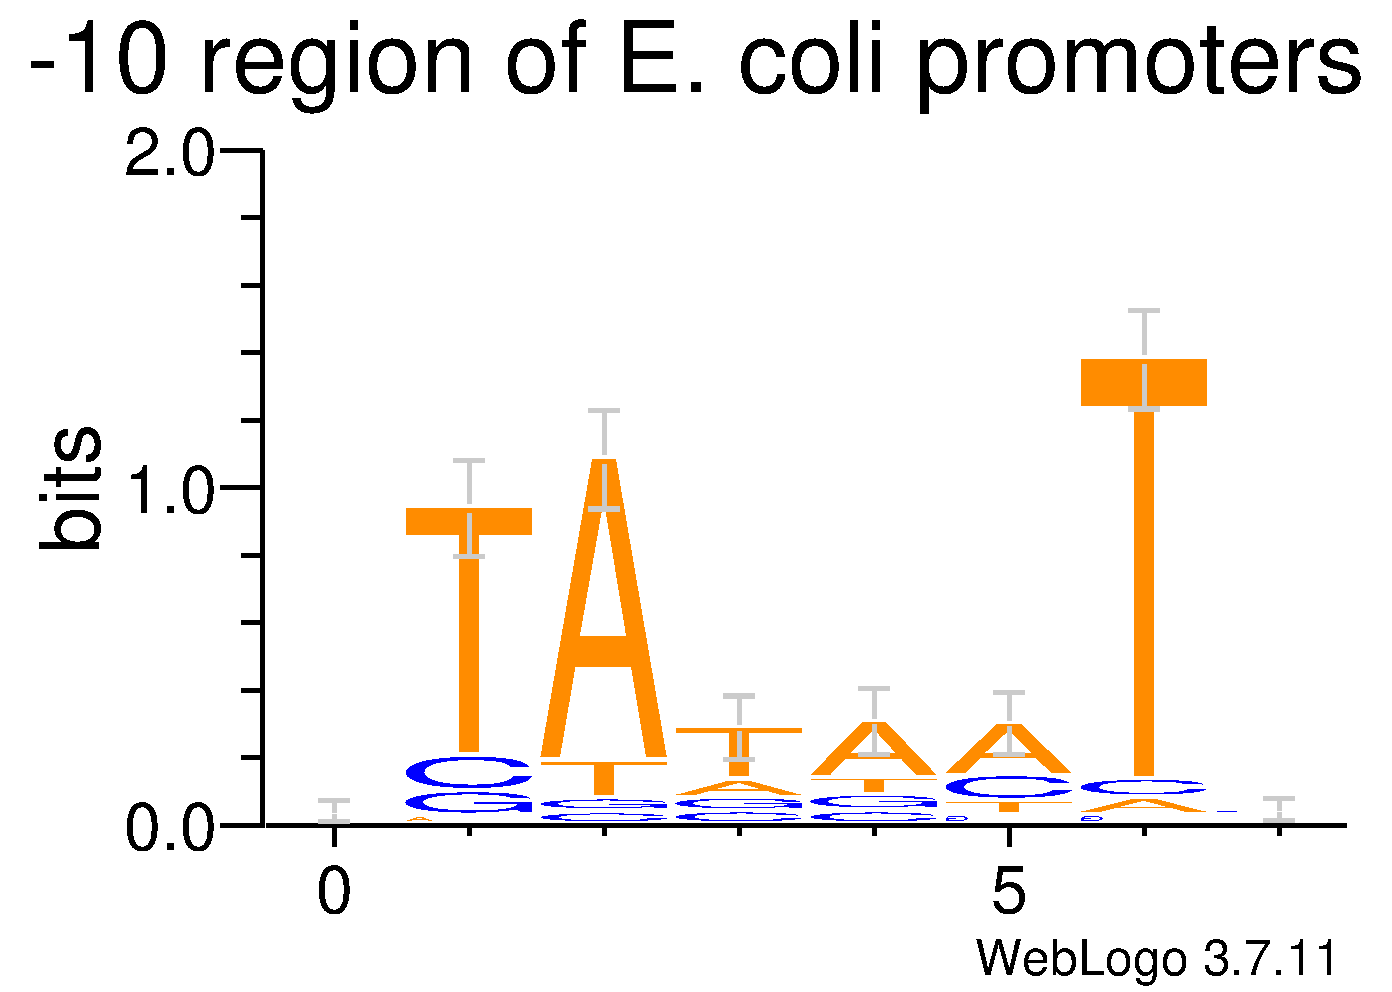 E. coli Promotor logo